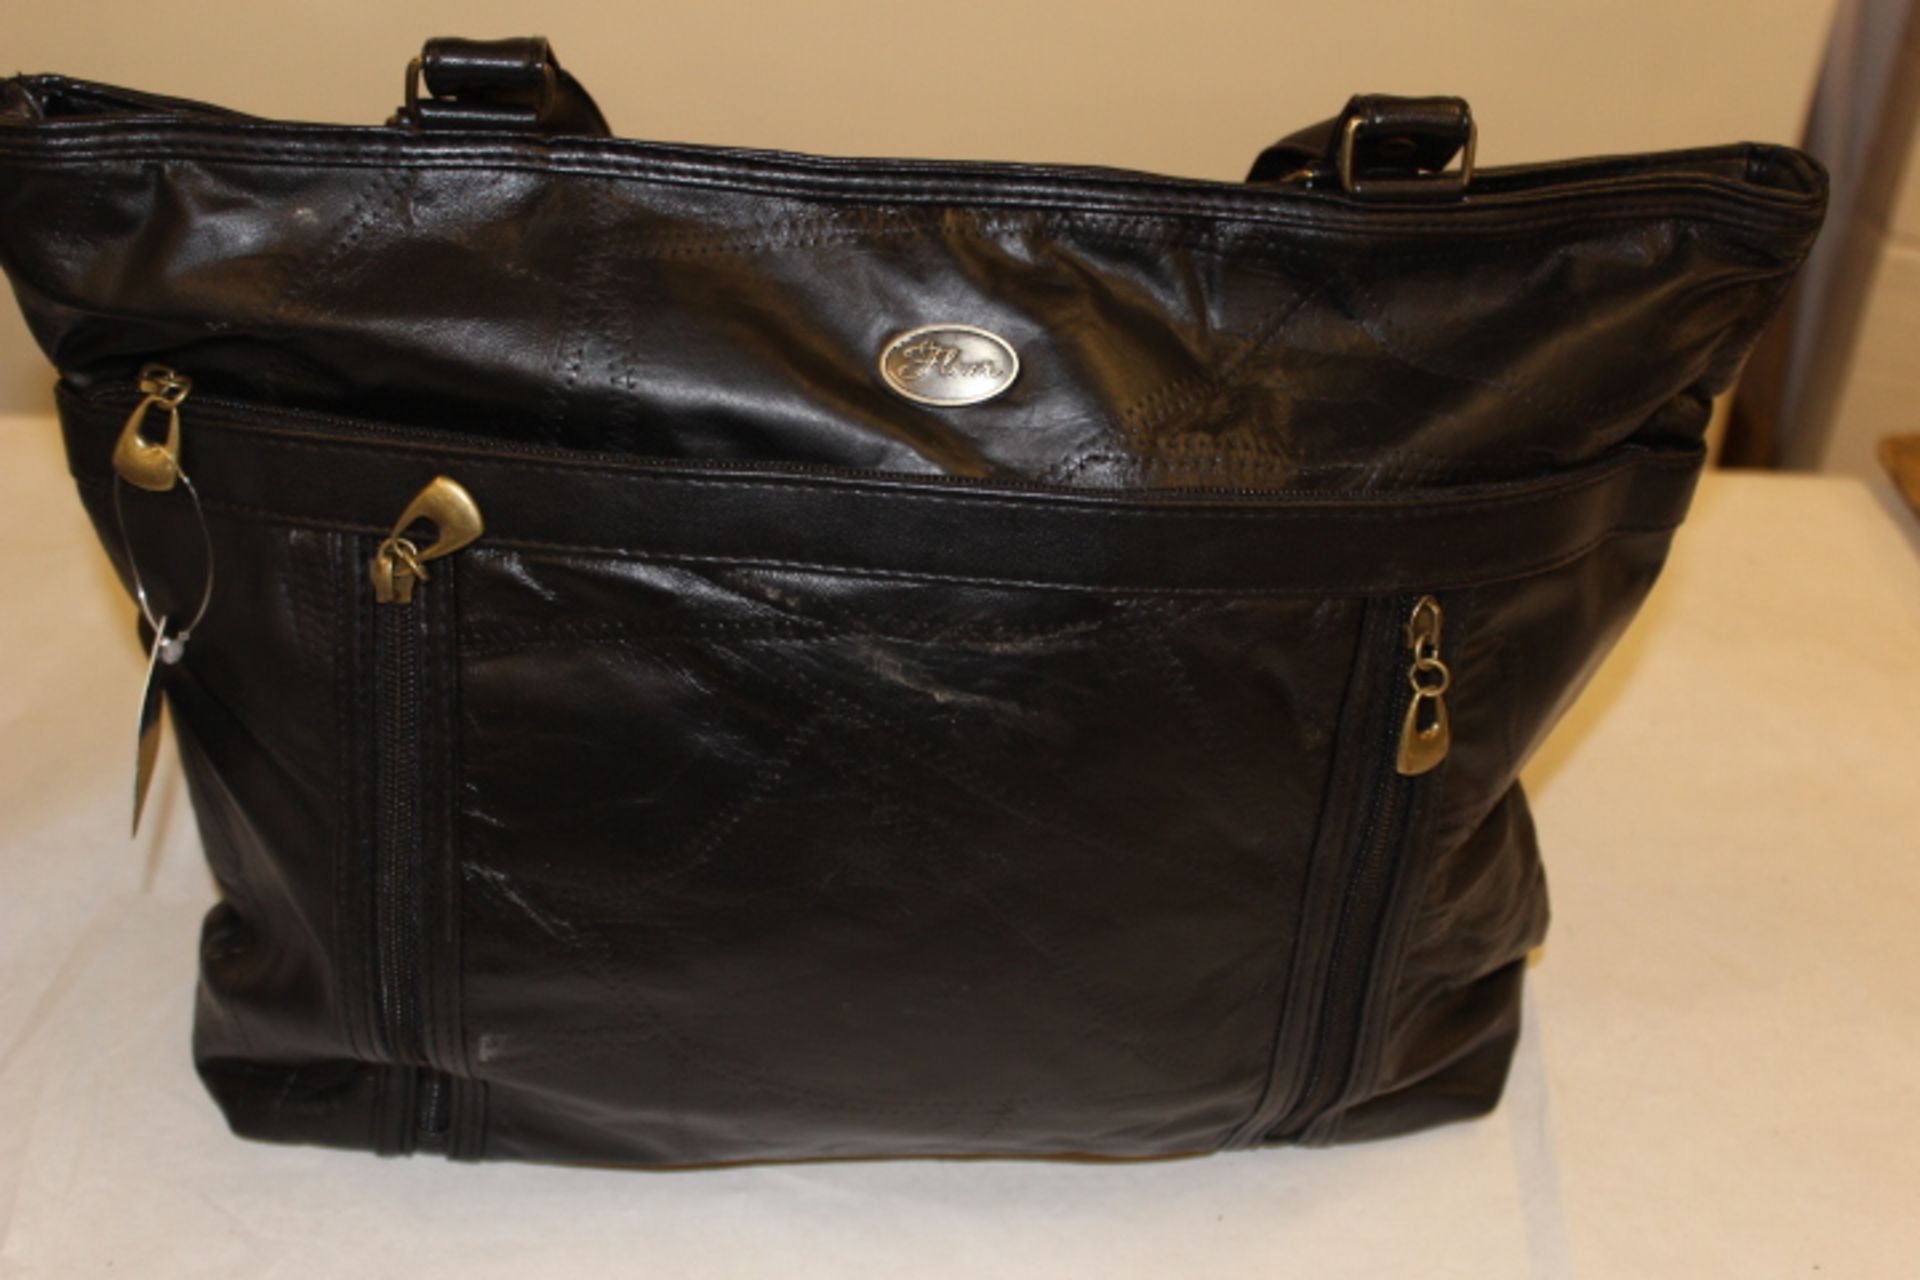 V Thomas Calvi Black PU Leather large patchwork style shoulder bag 'Fleur' - Image 2 of 2